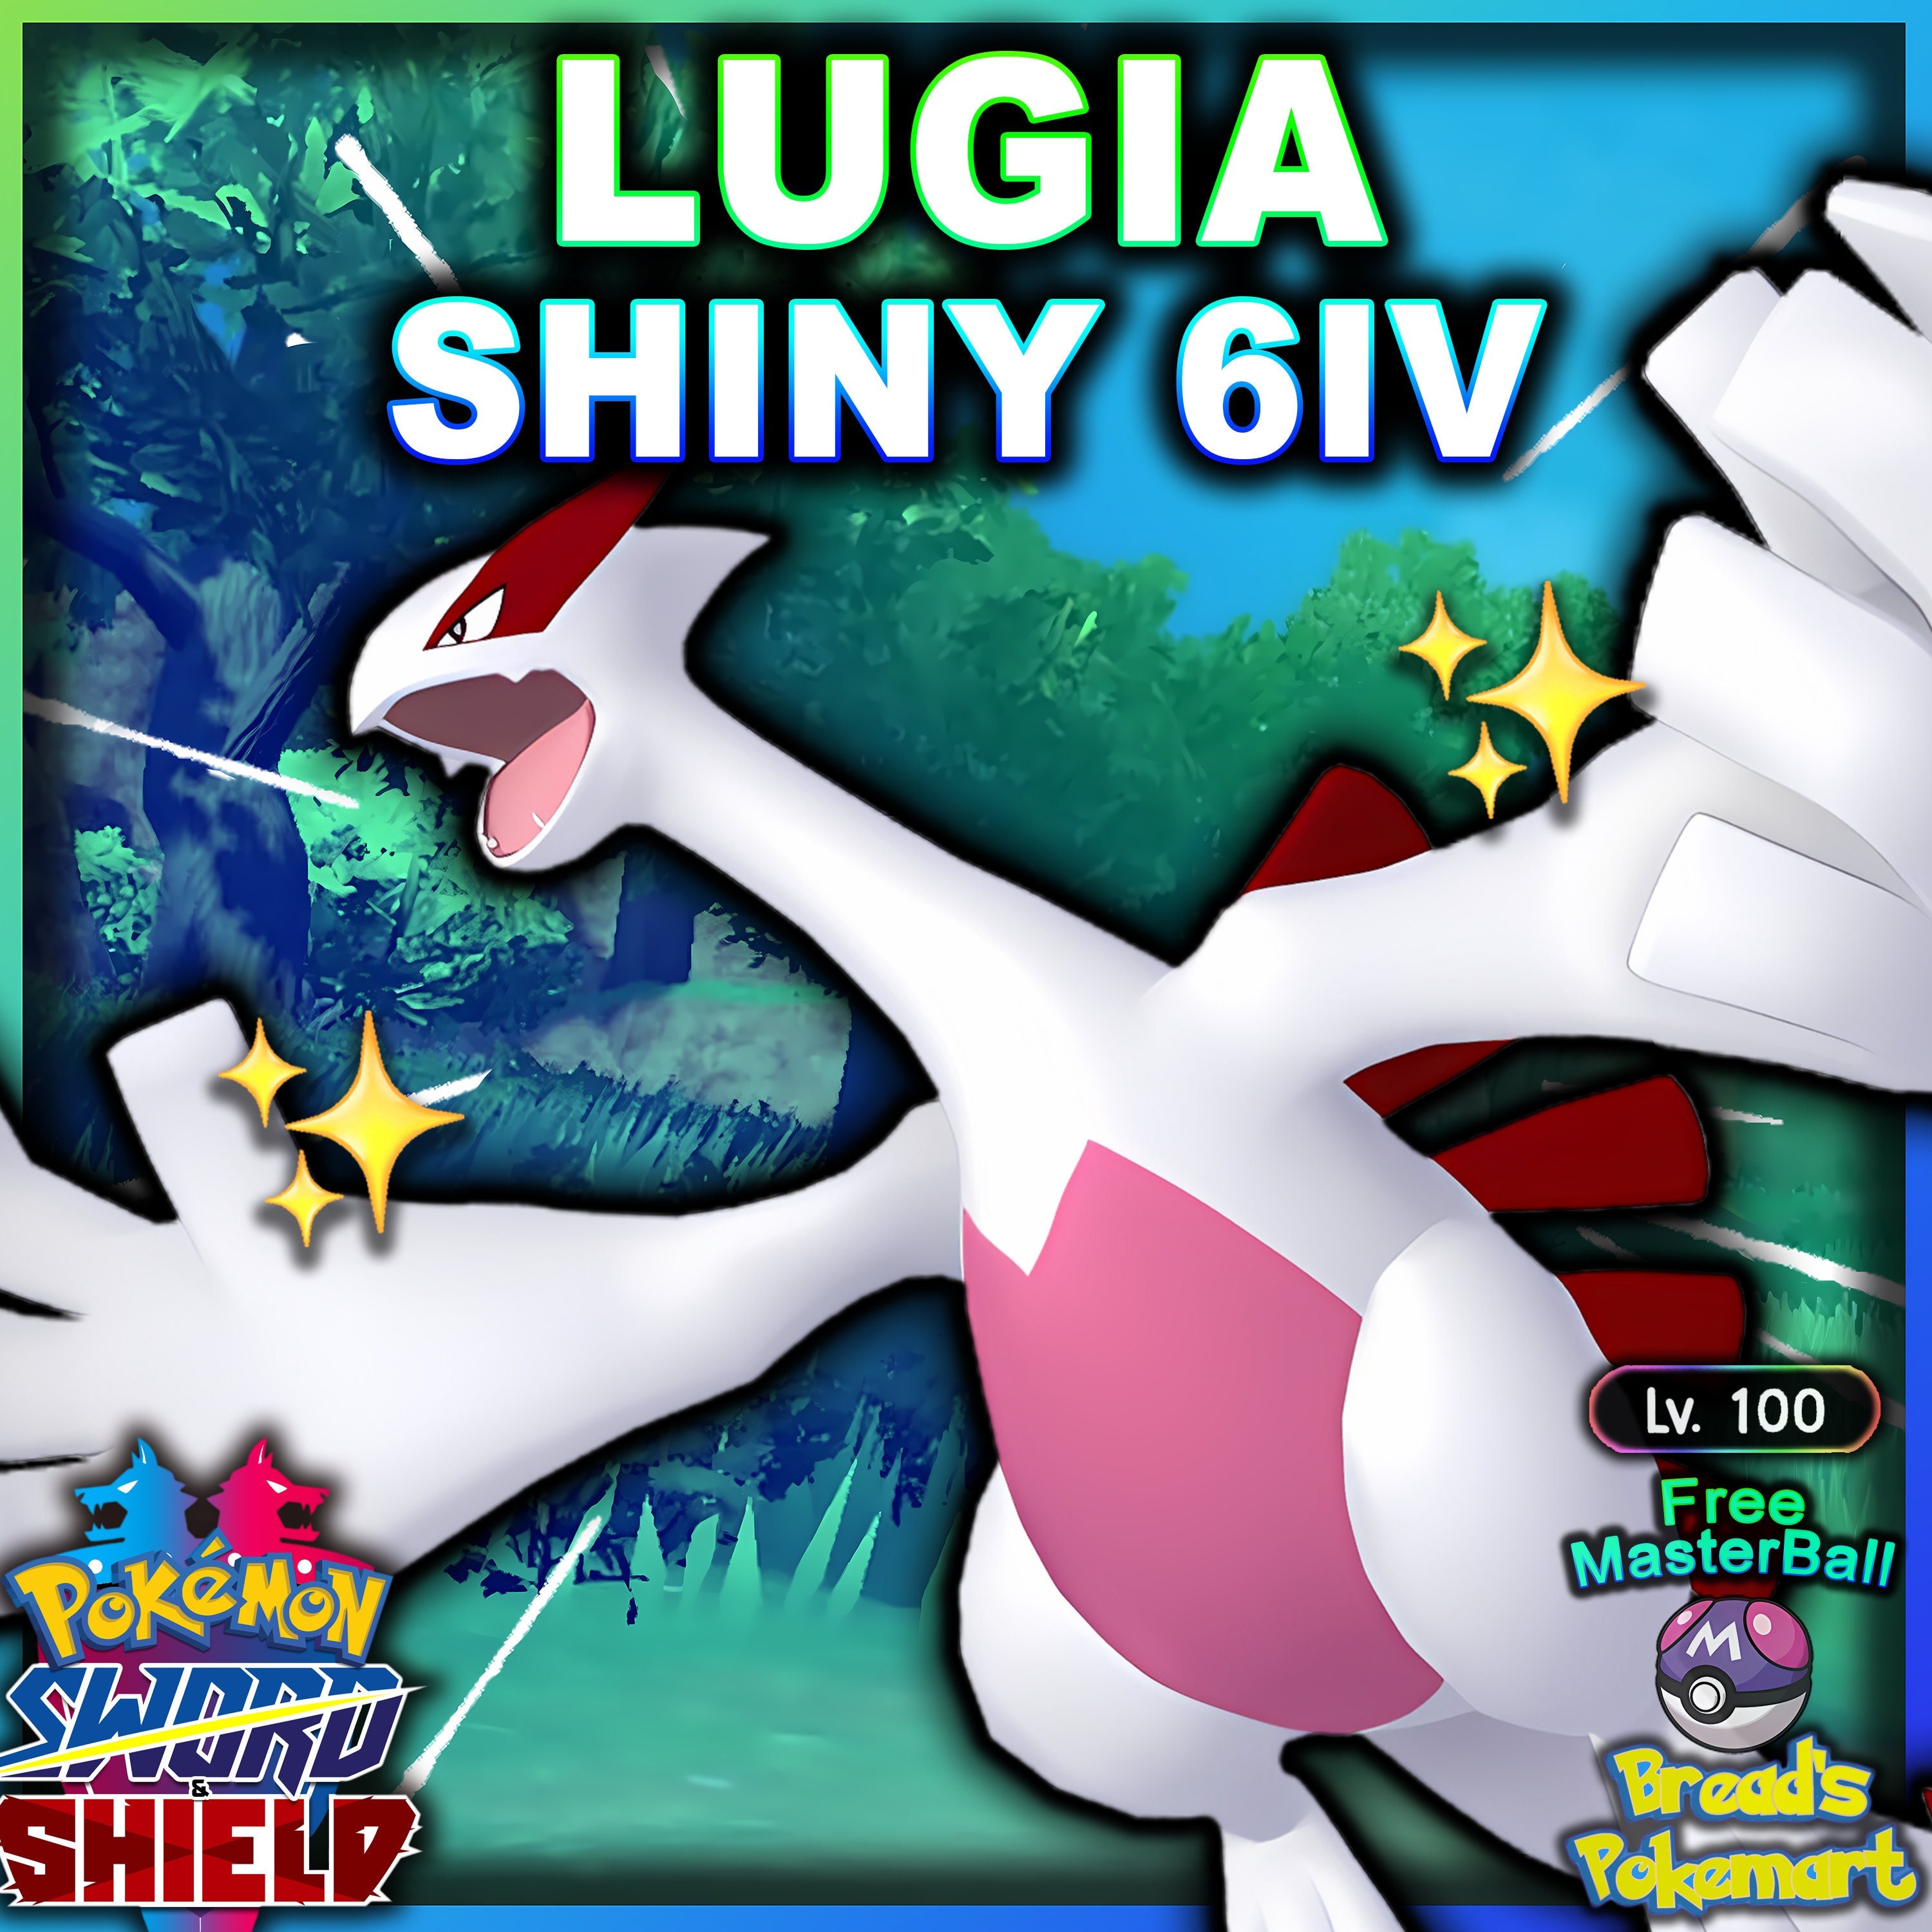 SHINY LUGIA?! Shiny Lugia in Pokemon Go!